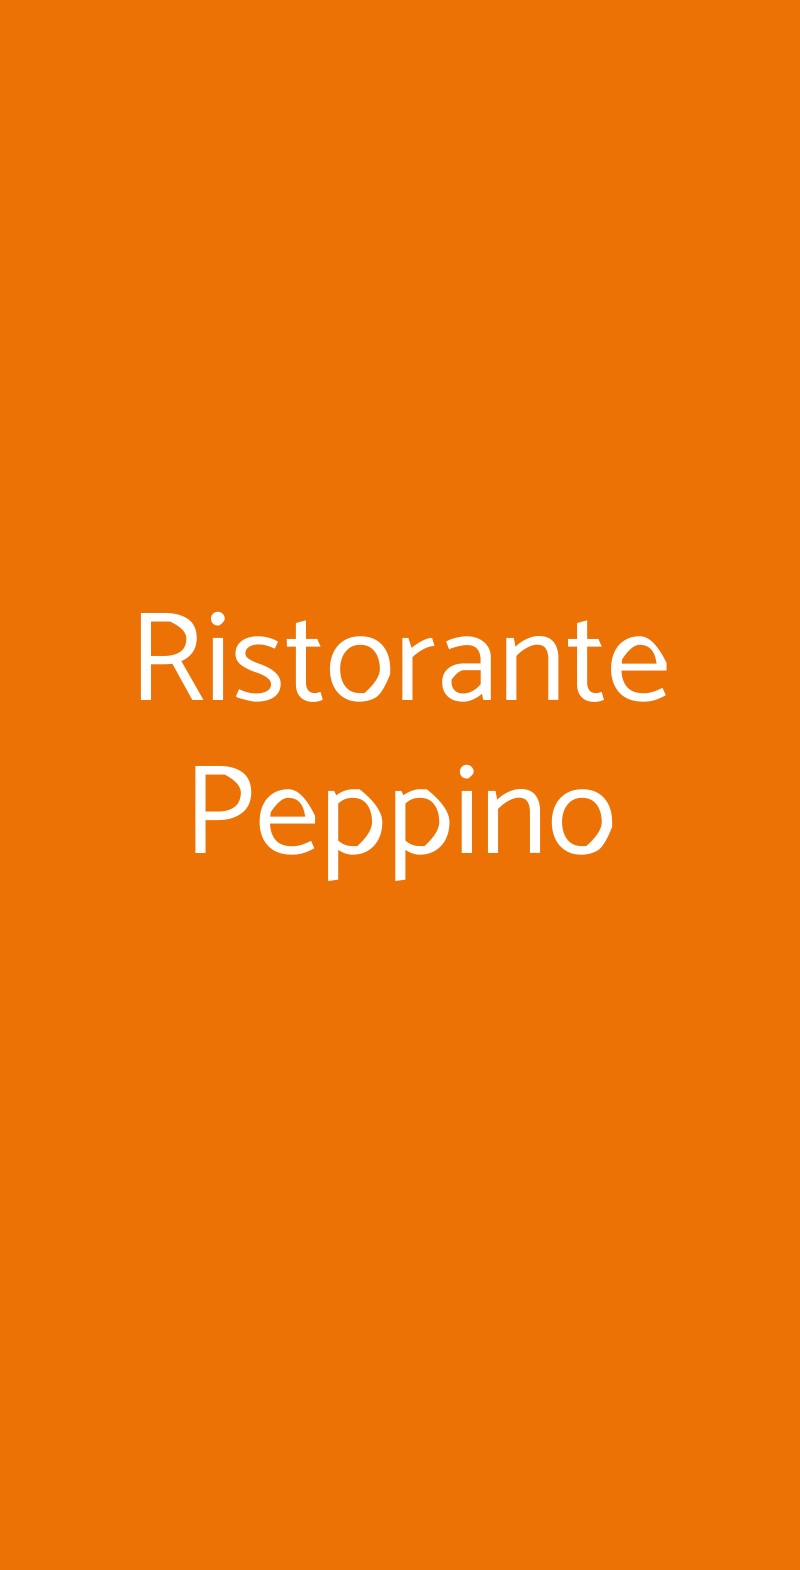 Ristorante Peppino Milano menù 1 pagina